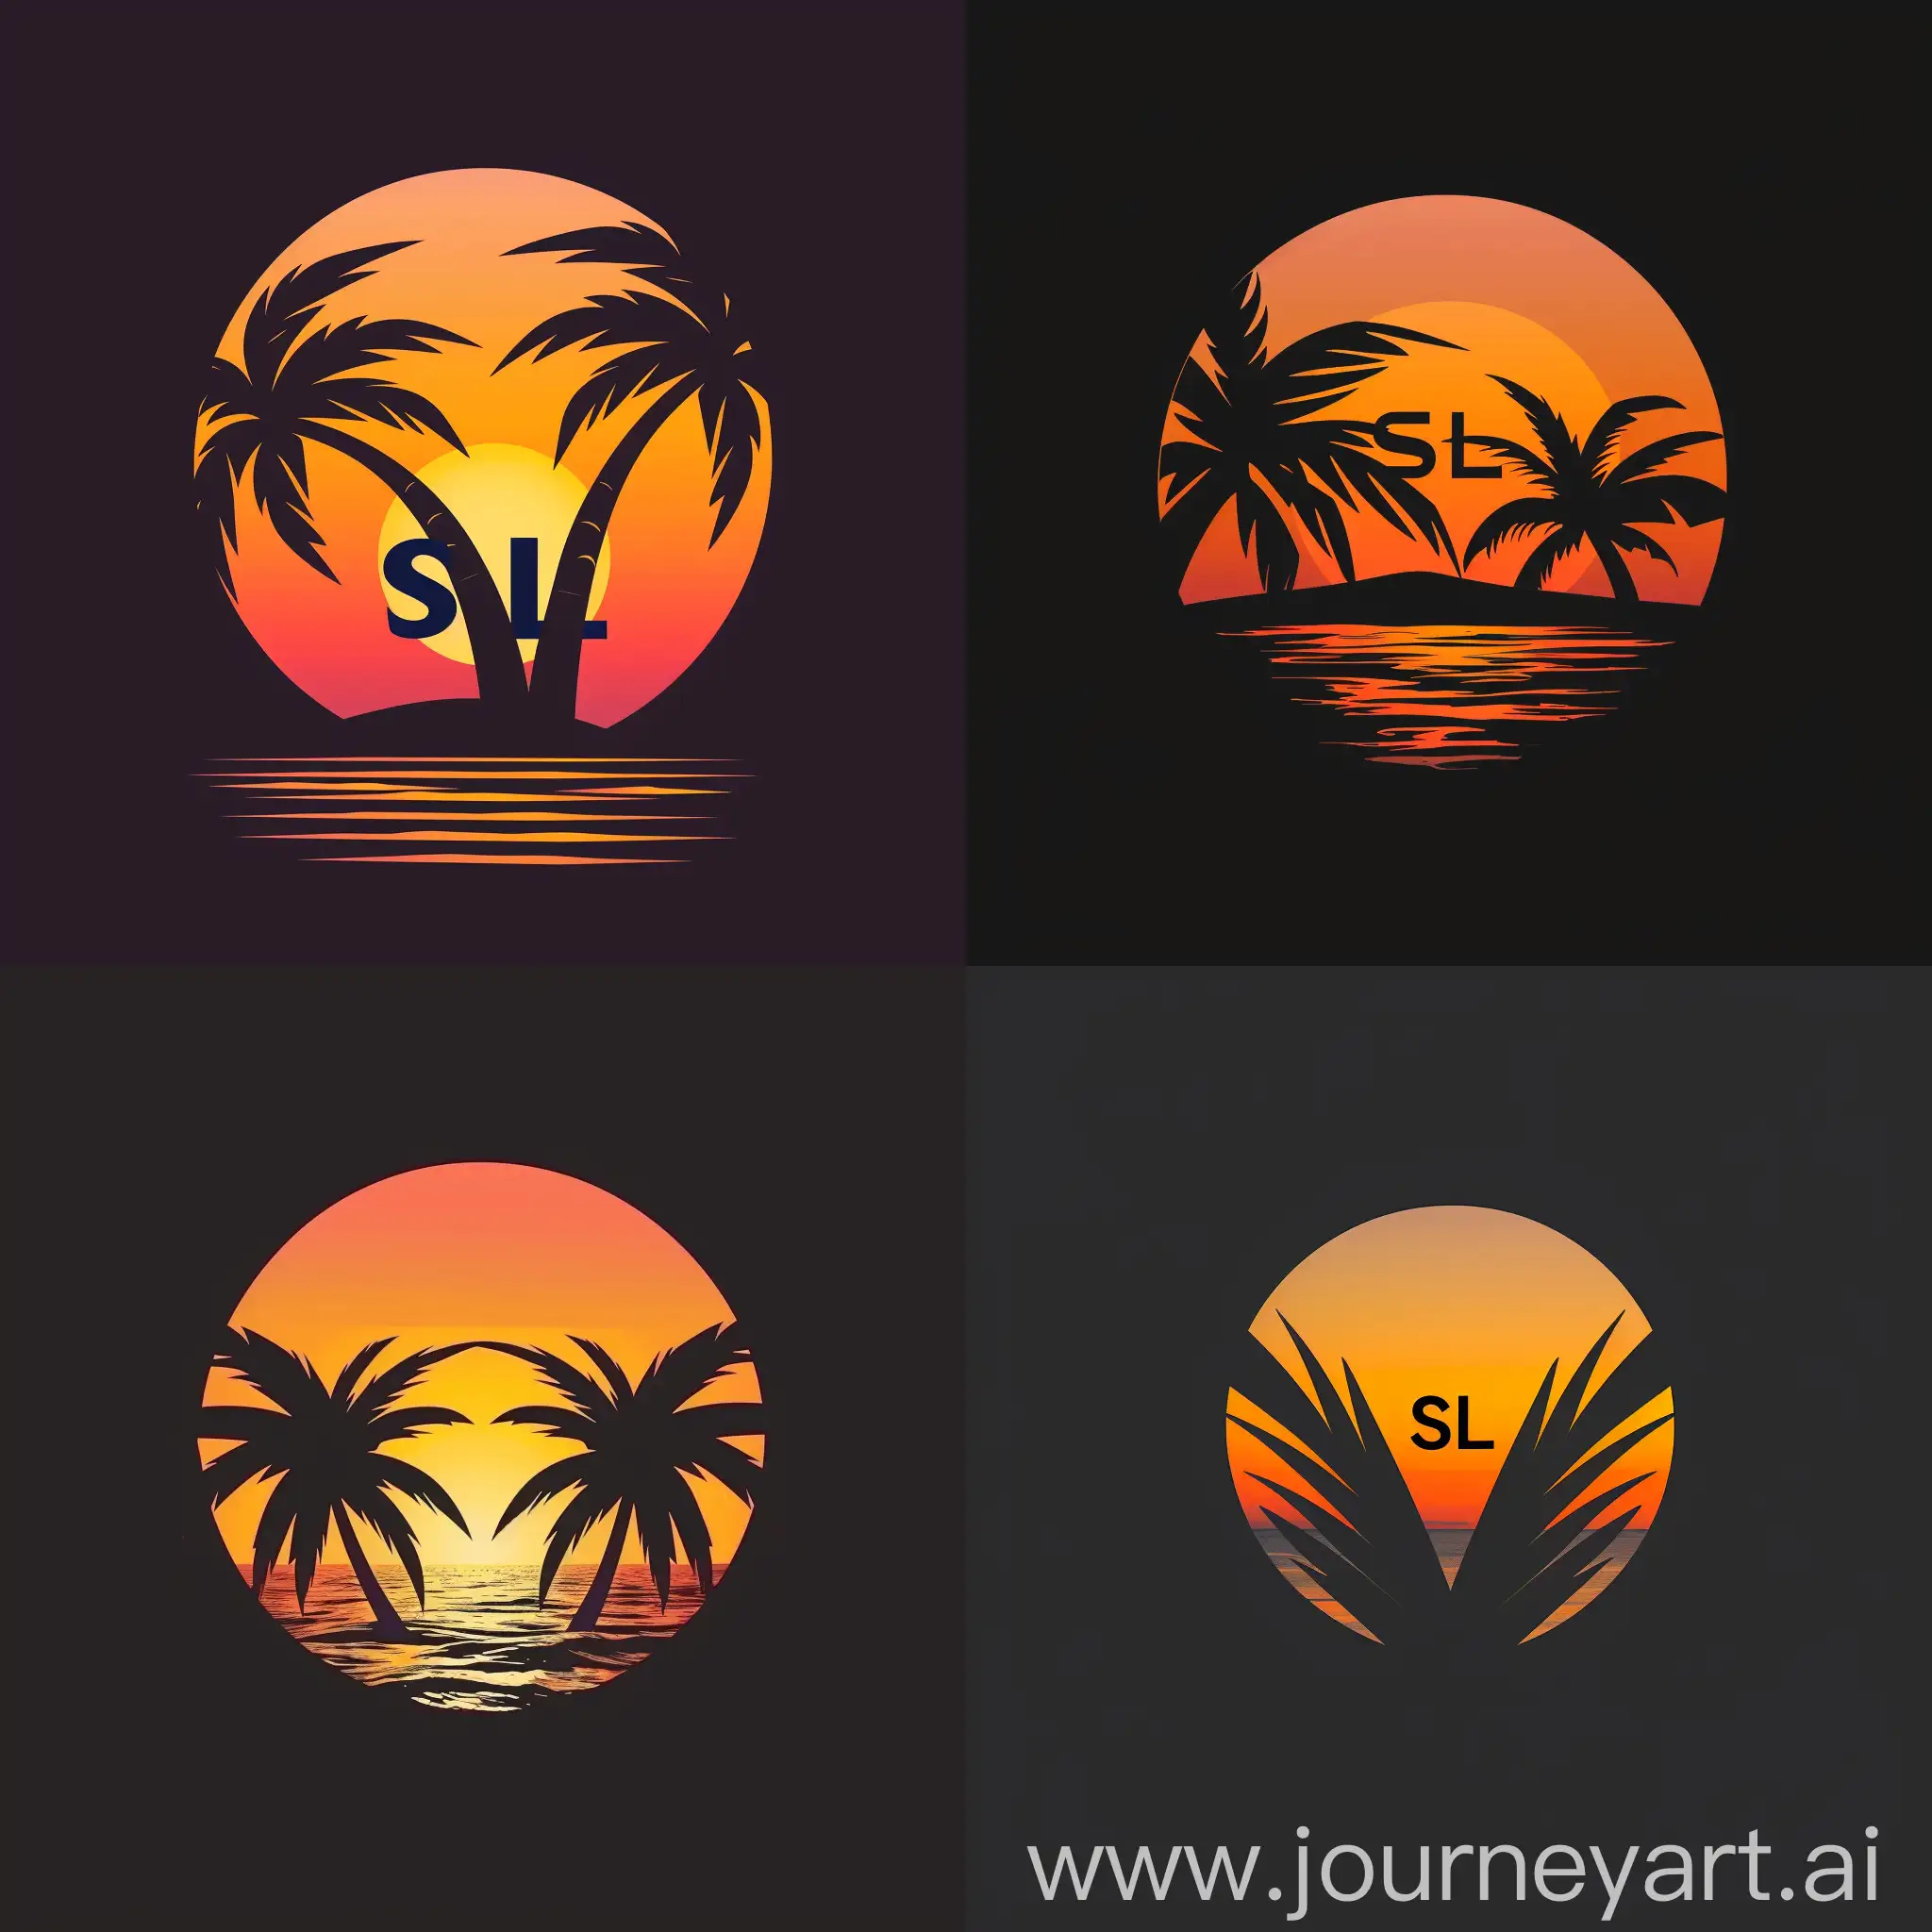 Интересный и запоминающийся логотип "SL" в виде двух пальм на фоне заката, отражающий тему отпуска, отдыха и расслабления, связанная с темой аниме Наруто